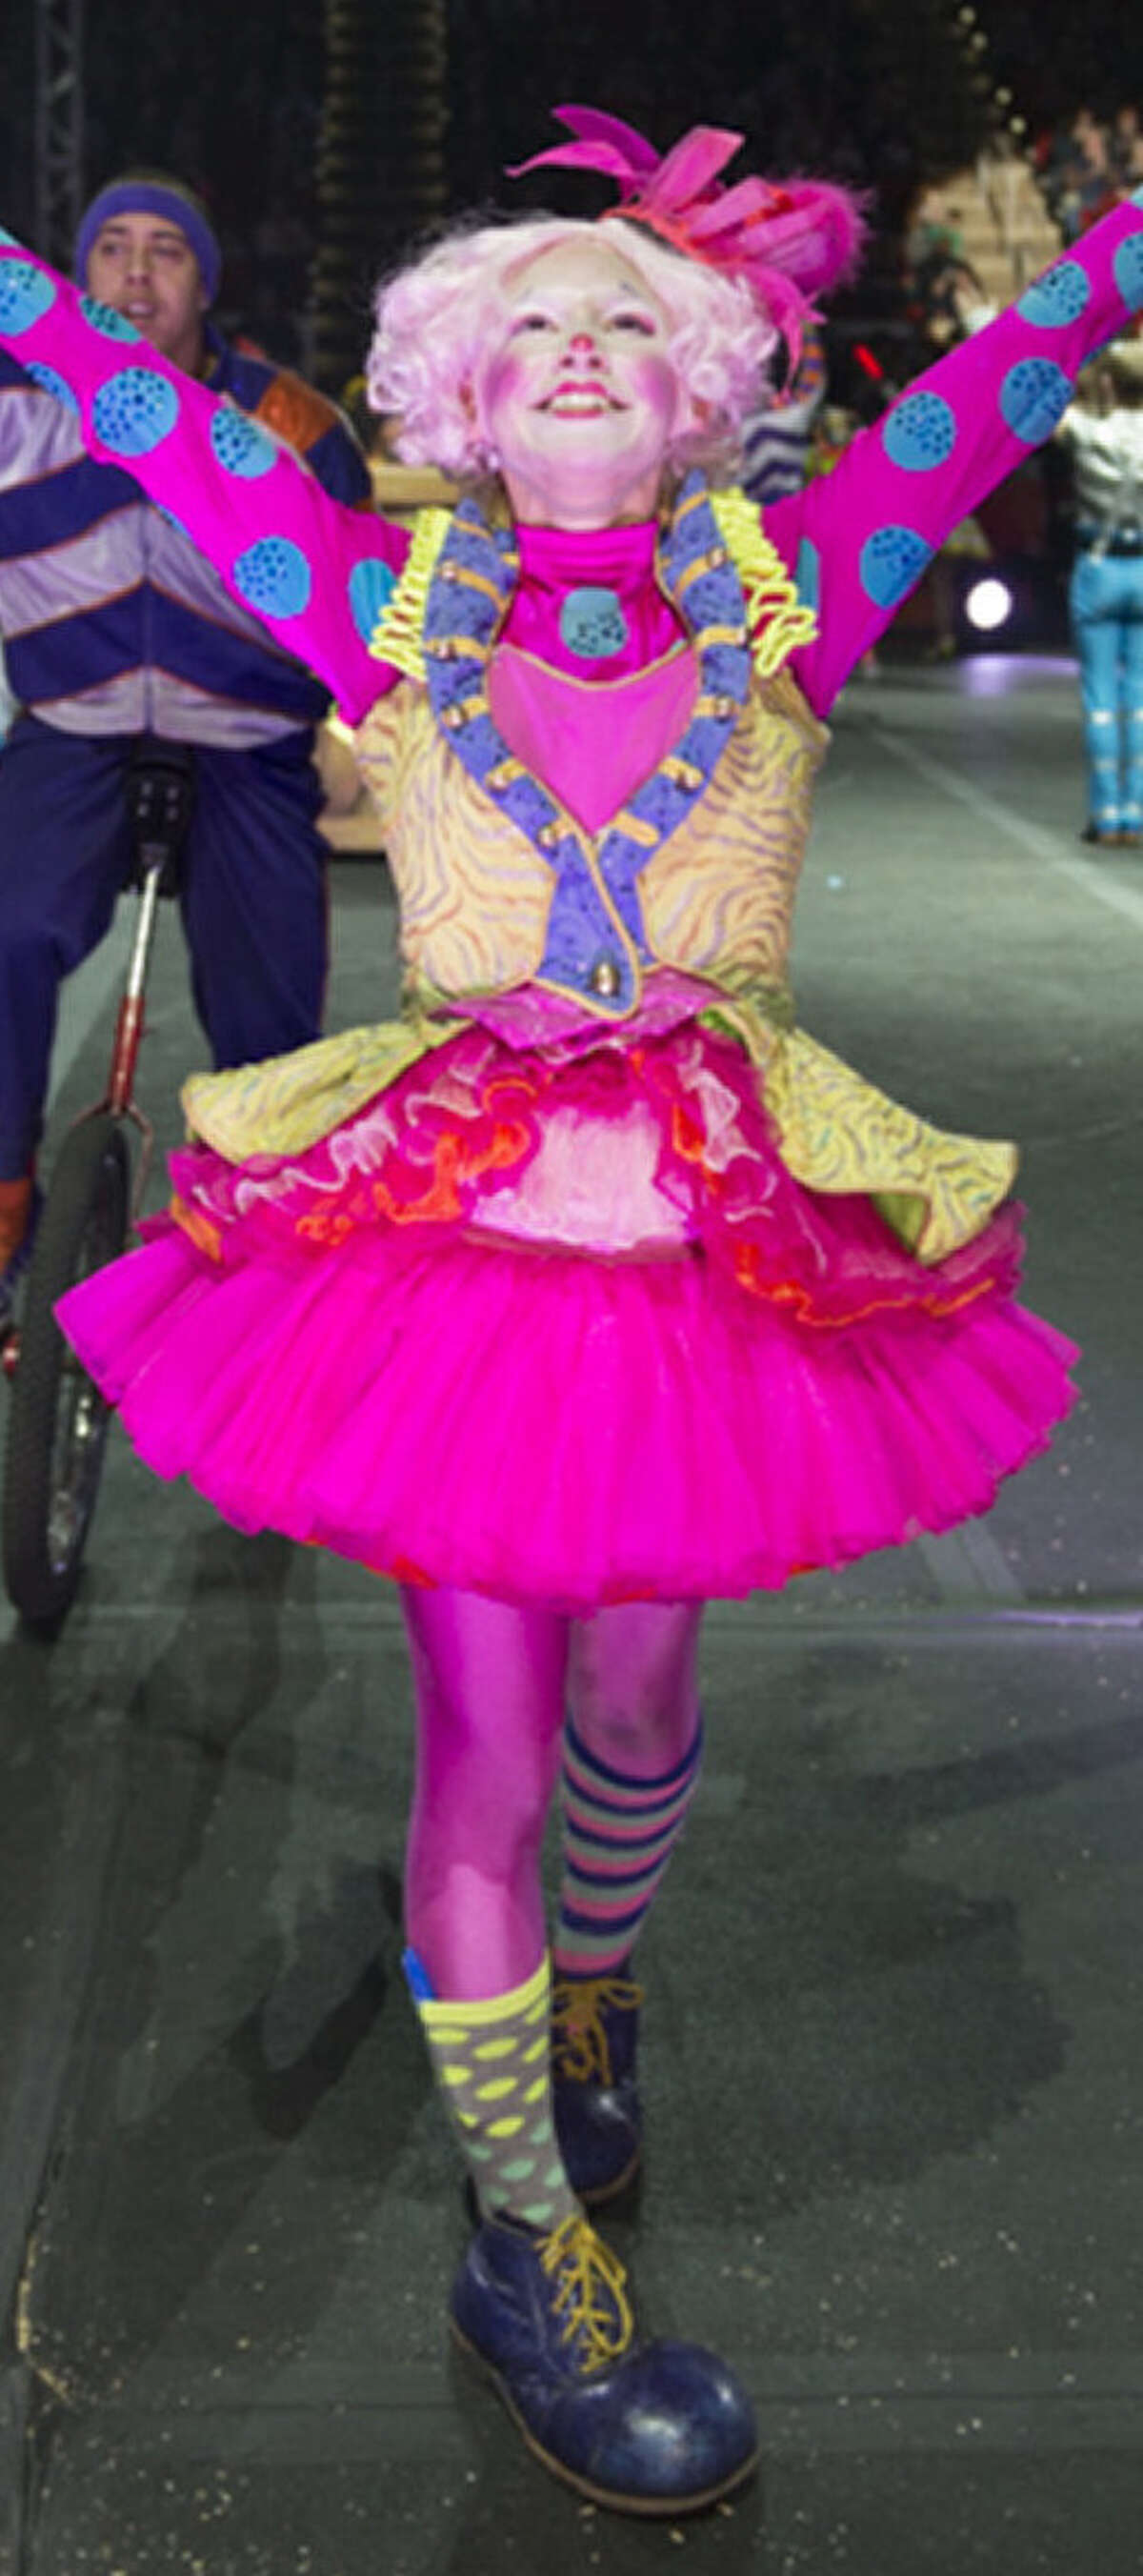 Cynthia ÂÃÂ£Go-goÂÃÂ¥ Reyna is a clown in Ringling Bros. "Built to Amaze!" circus show.